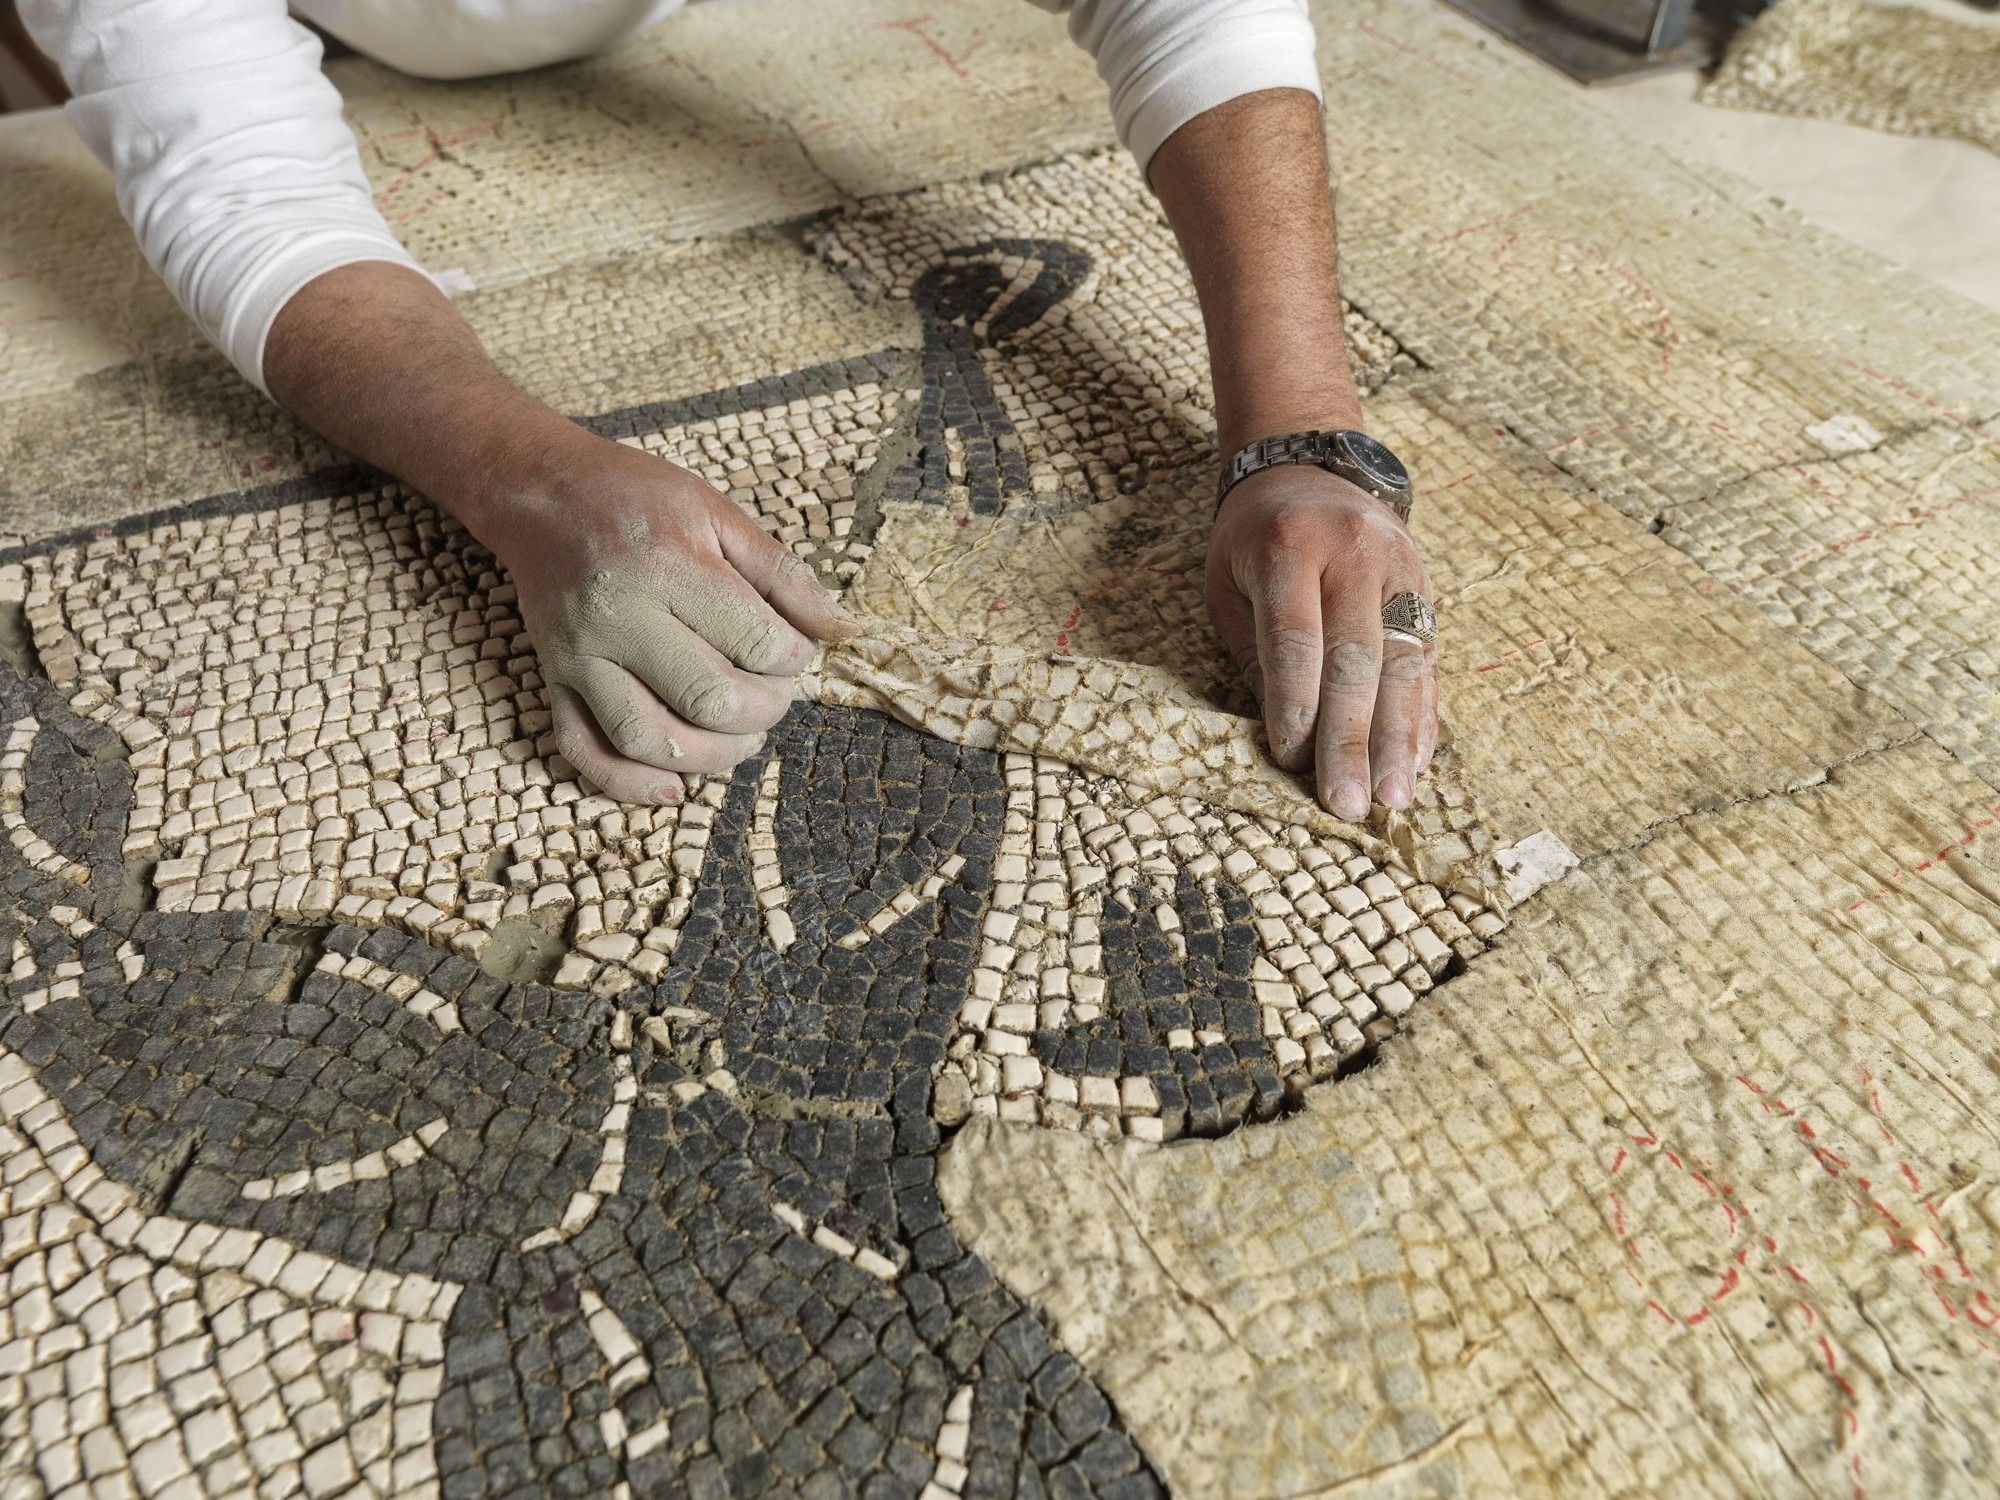 la-et-cam-getty-mosaikon-mosaic-program-conservation-conflict-zones-20141020